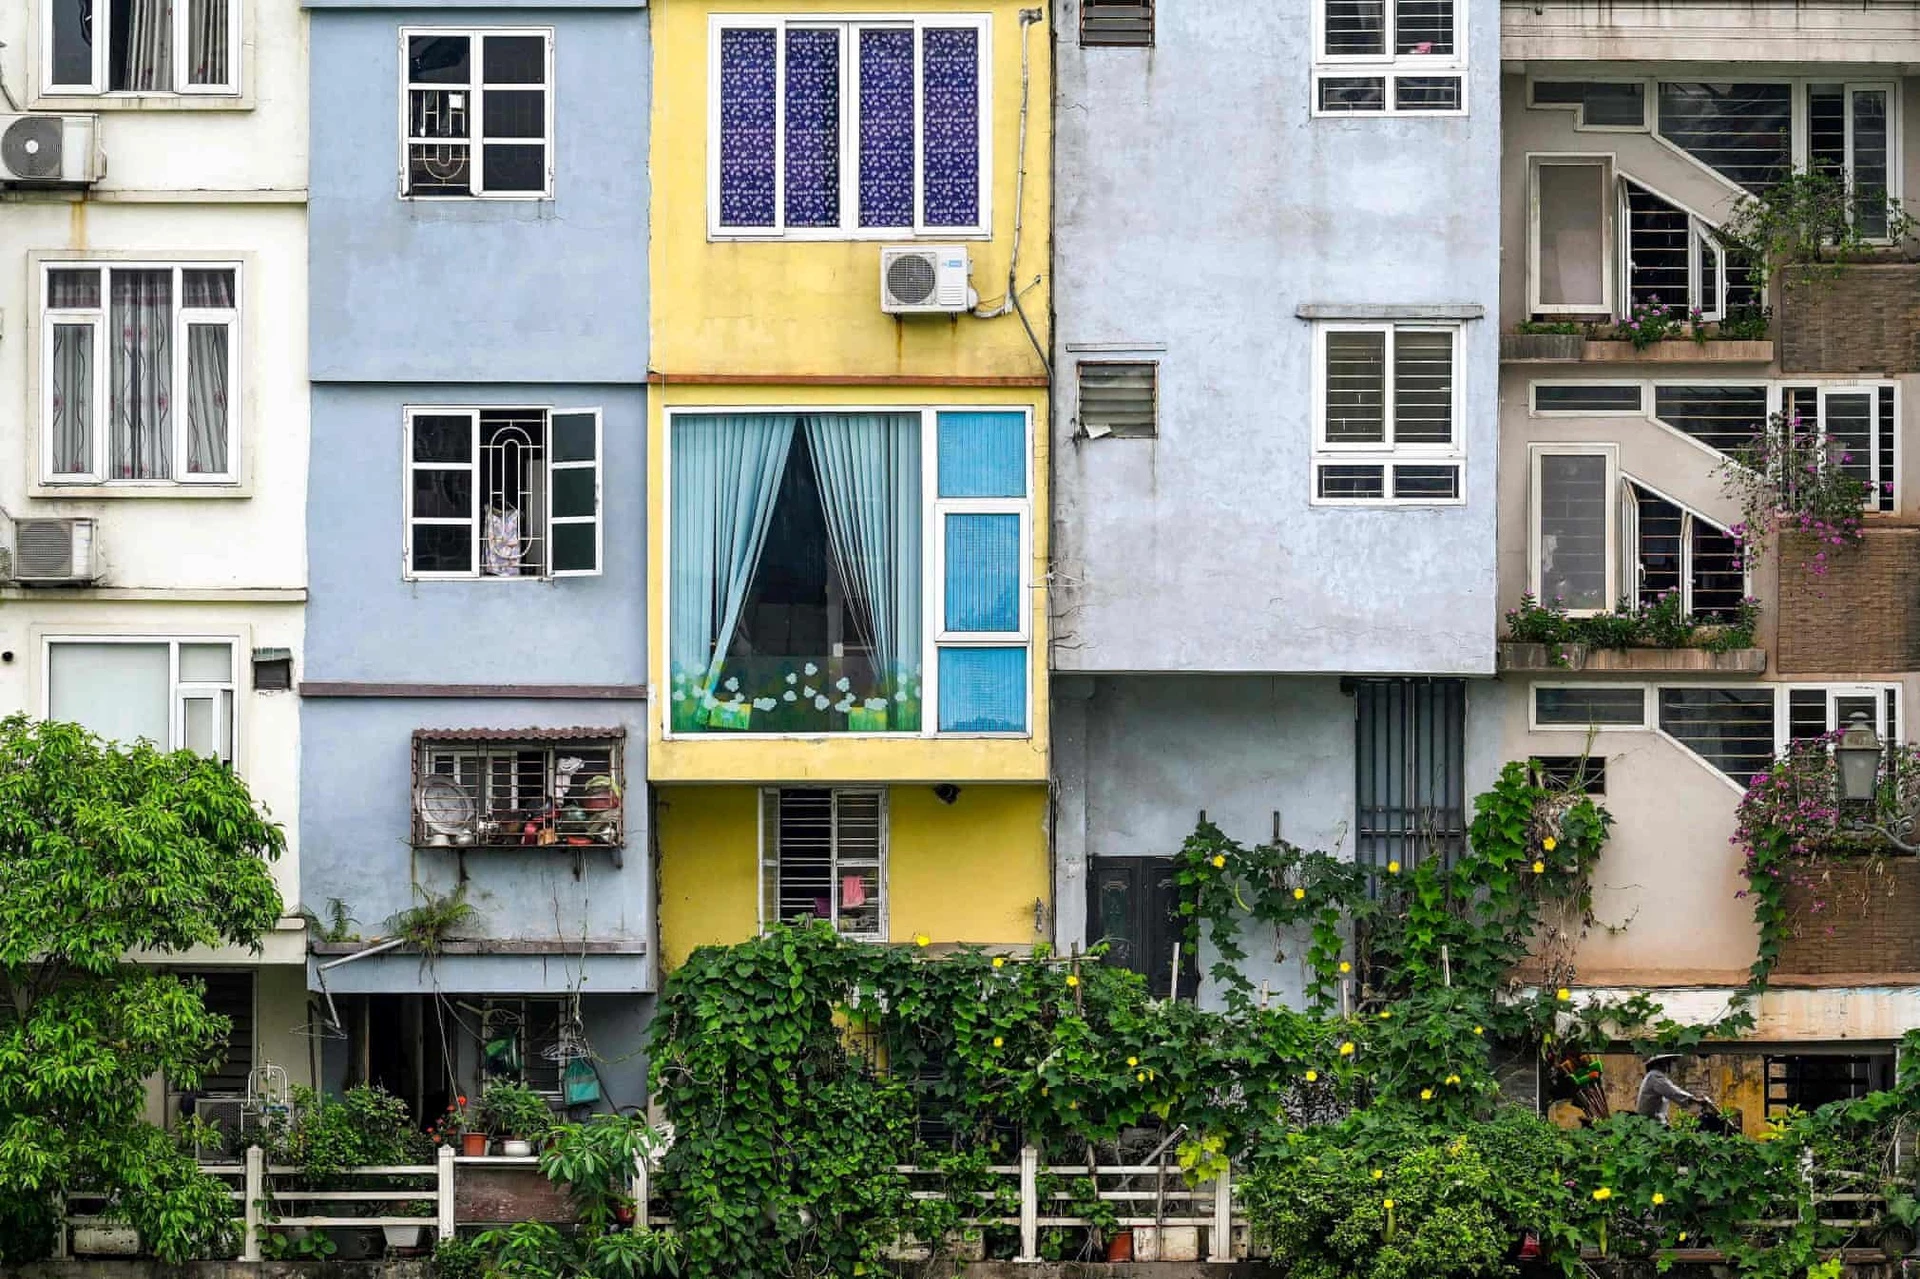 Tác giả nhận xét nhiều ngôi nhà ở Hà Nội chỉ rộng khoảng 4 m nhưng chiều sâu có thể gấp 3 lần.